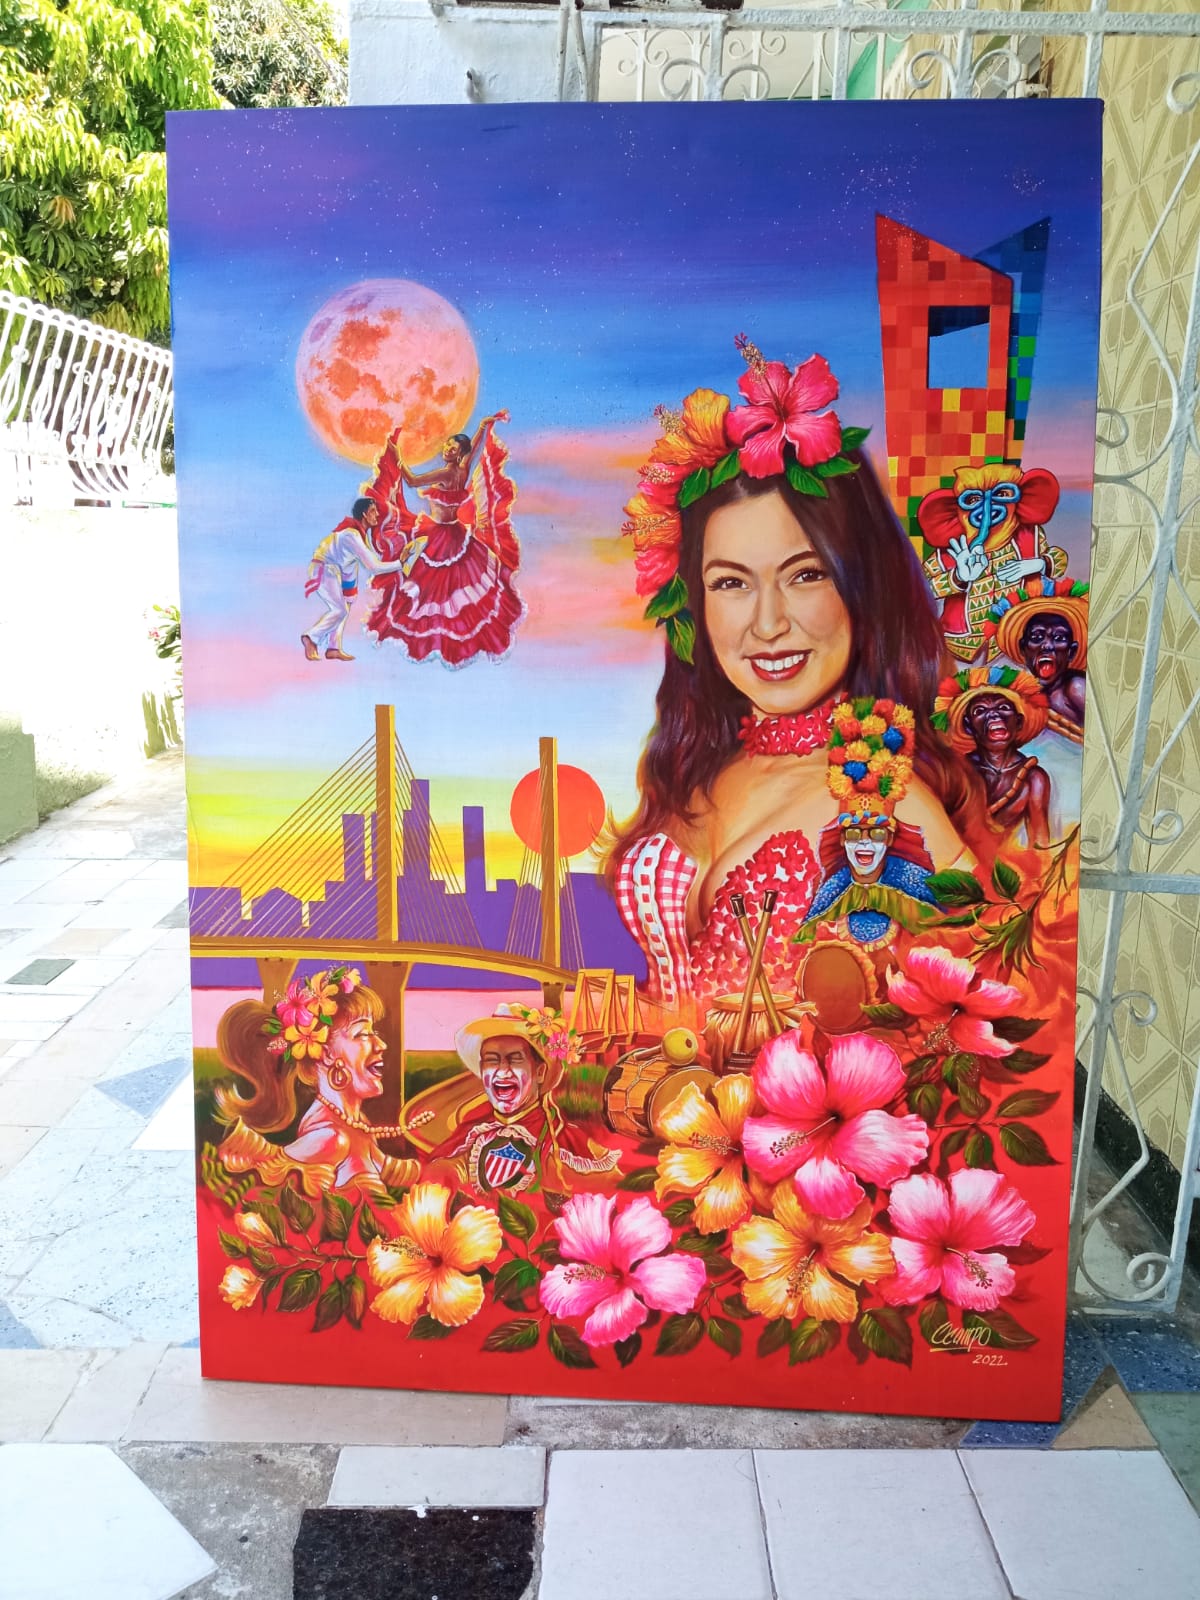 La obra dedicada a la Reina del Carnaval de Barranquilla 2022, Valeria Charris Salcedo.